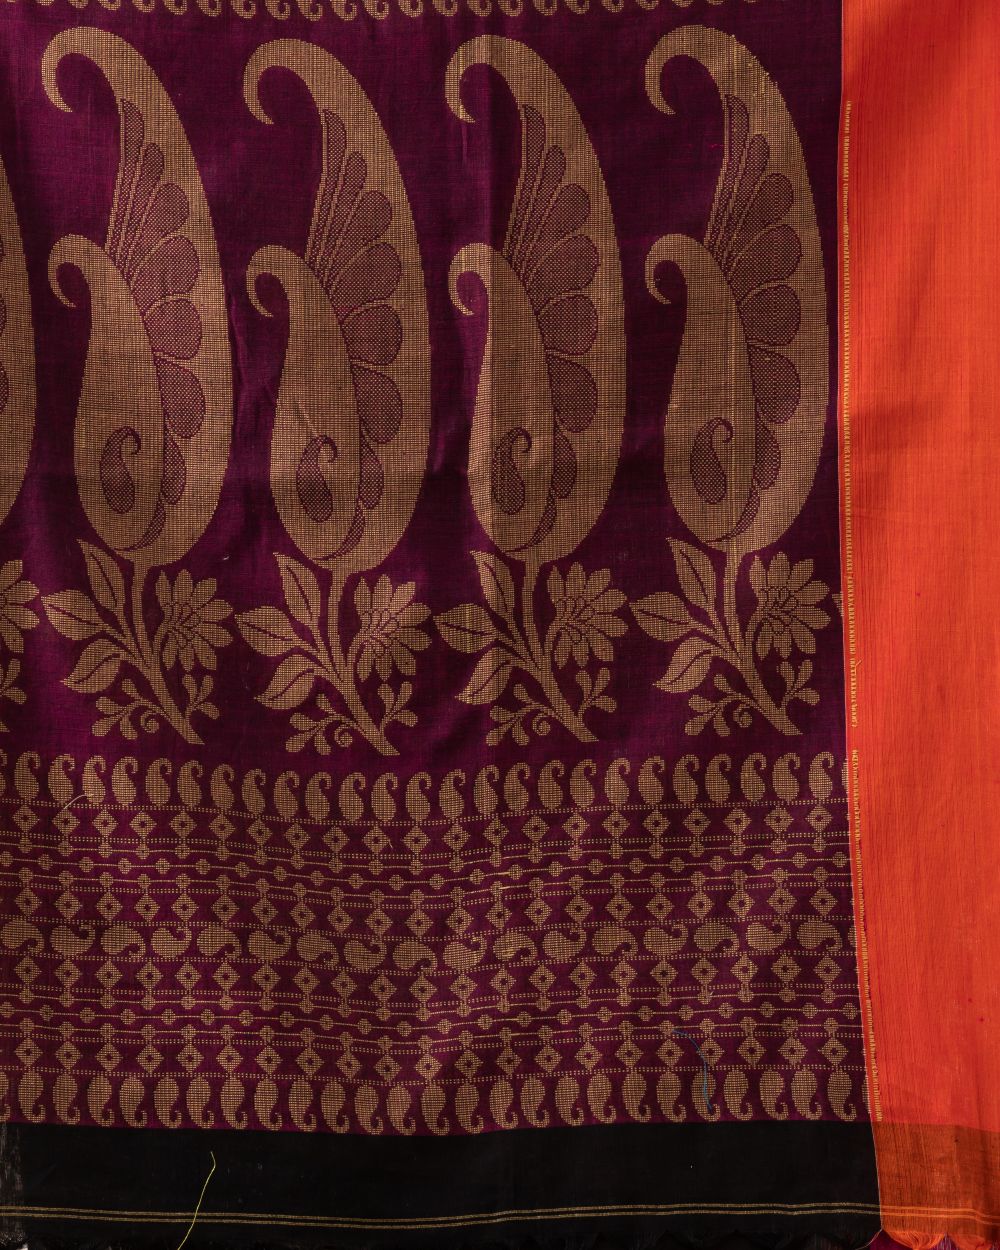 Black bengal handwoven cotton saree